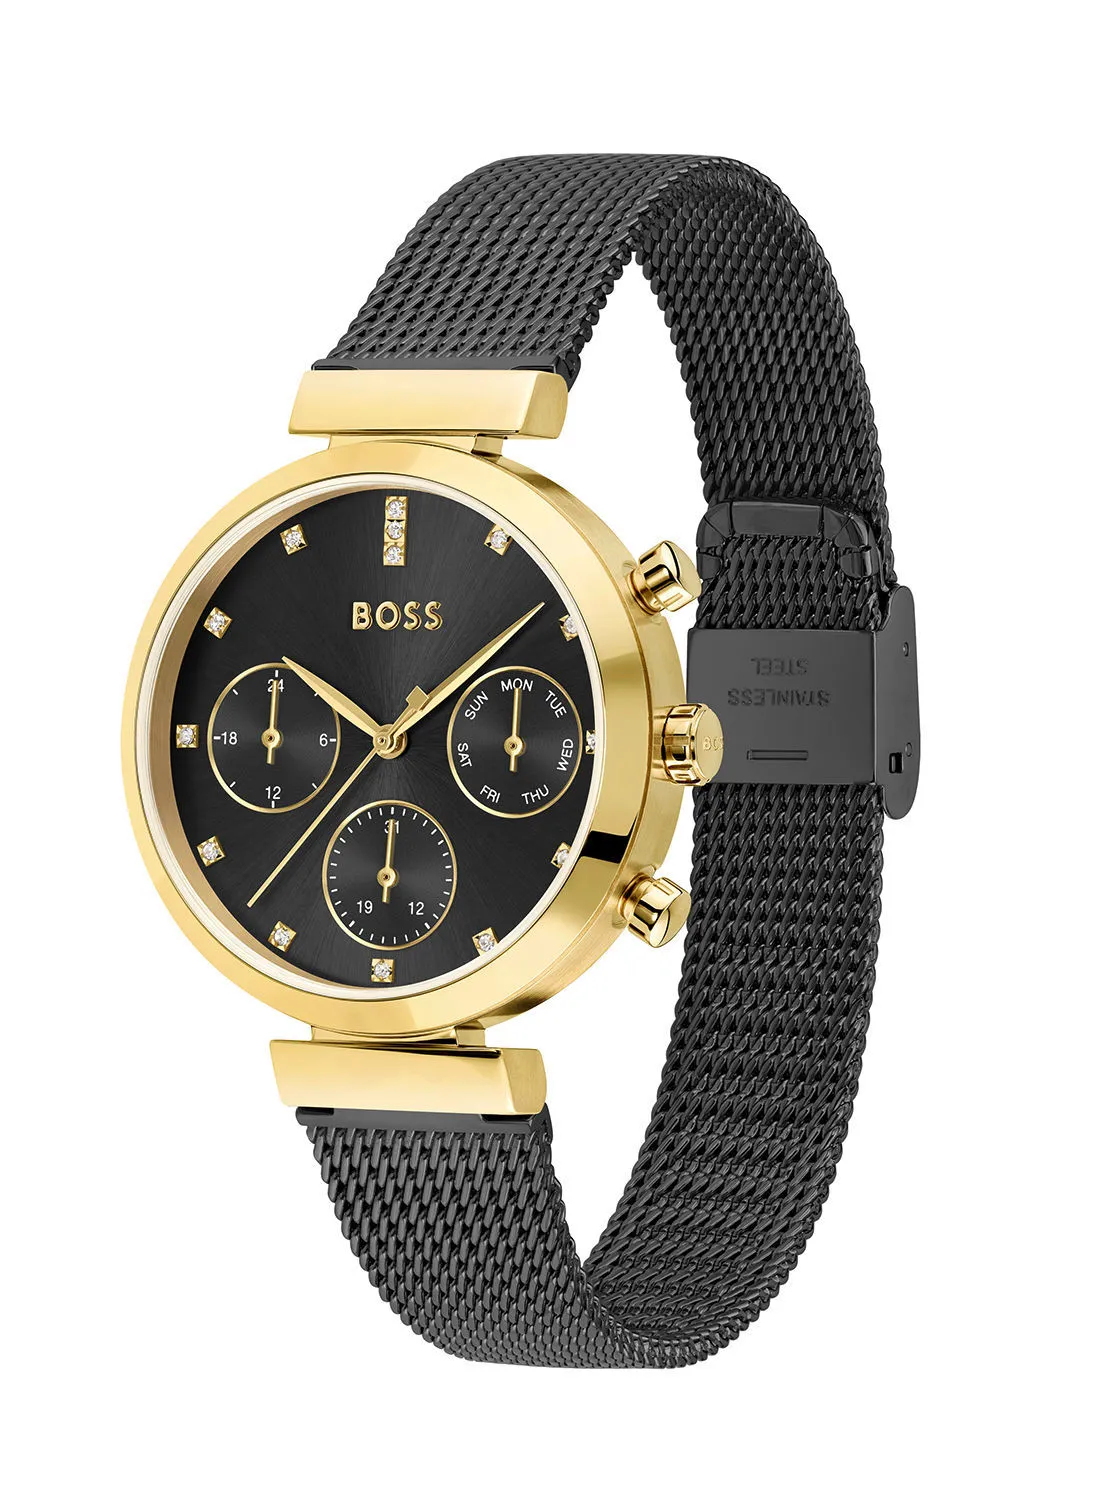 HUGO BOSS Flawless Women's Black Dial, Ionic Plated Steel Wrist Watch - 1502627